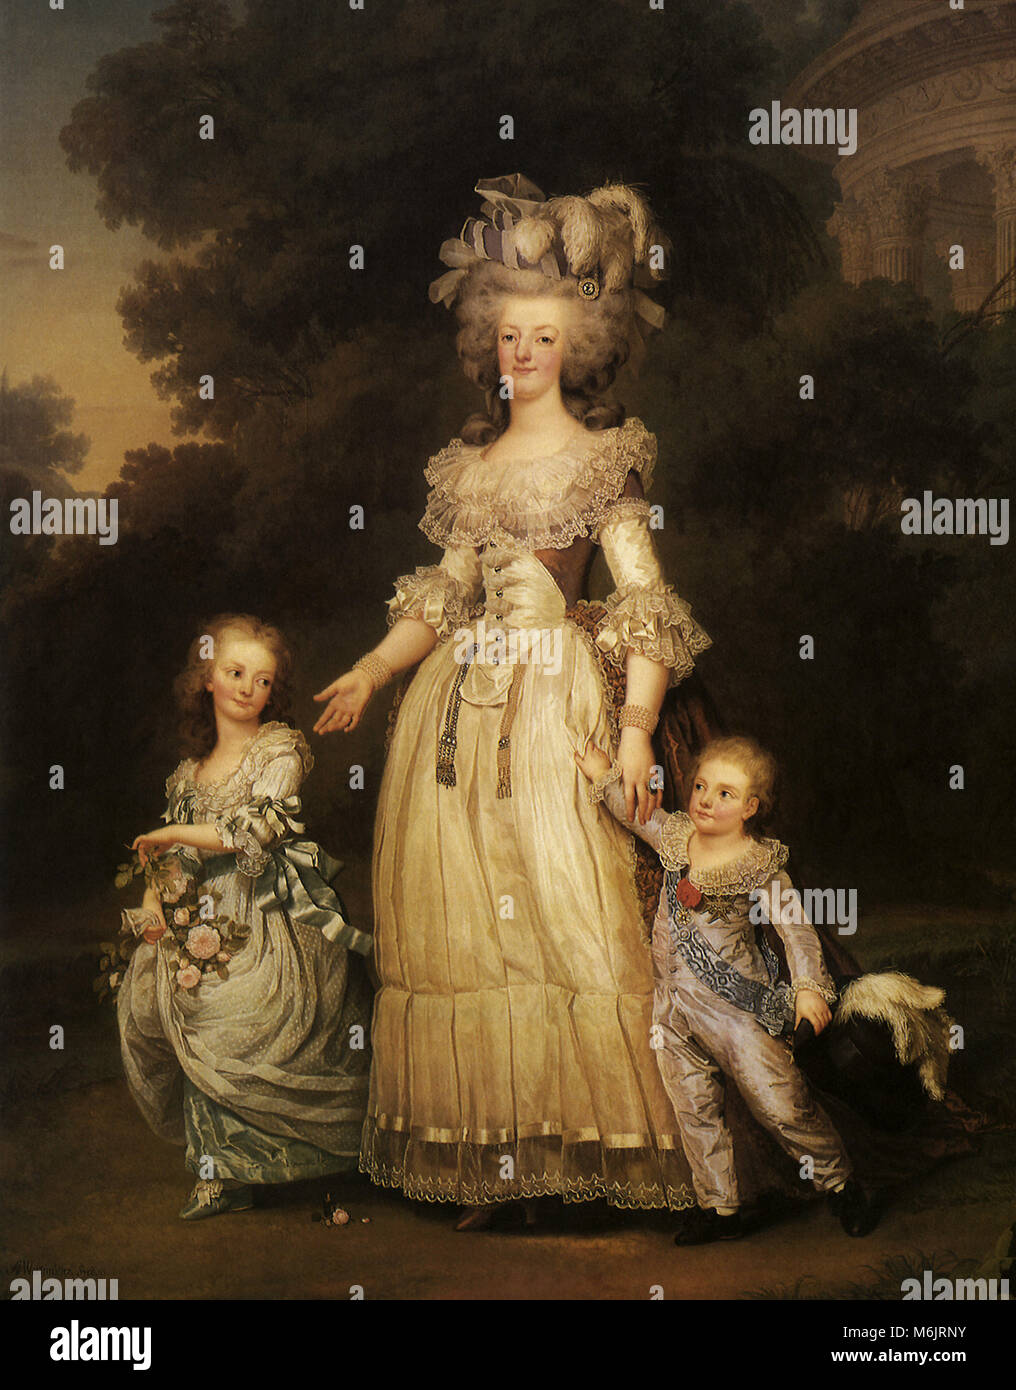 Ritratto della regina Maria Antonietta con i suoi figli 1785, Westmuller, Adolf Ulrik, 1785. Foto Stock